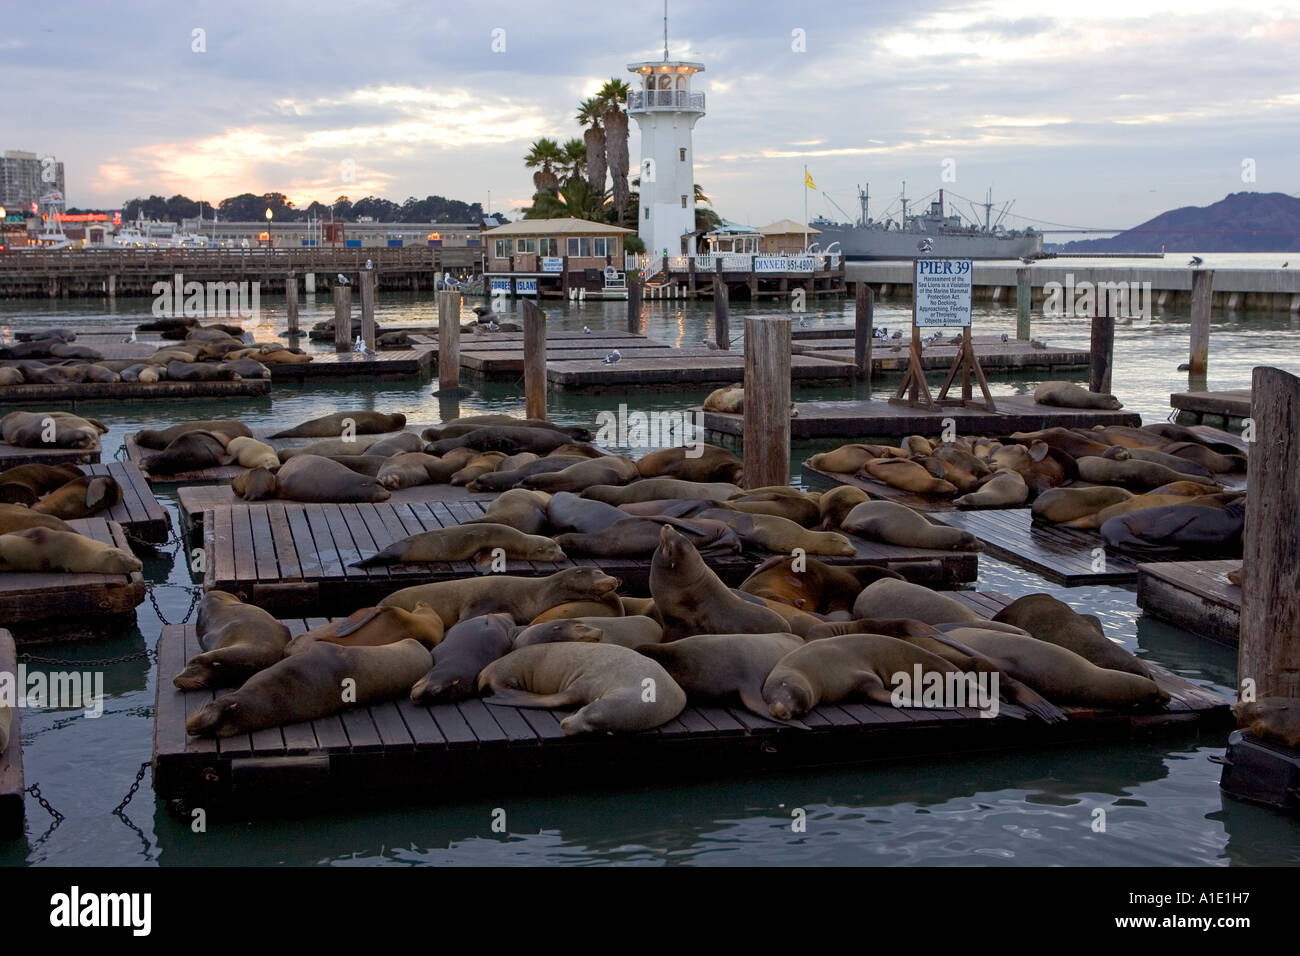 California i leoni di mare il resto su zattere galleggianti al Molo 39 San Francisco Stati Uniti d'America Foto Stock